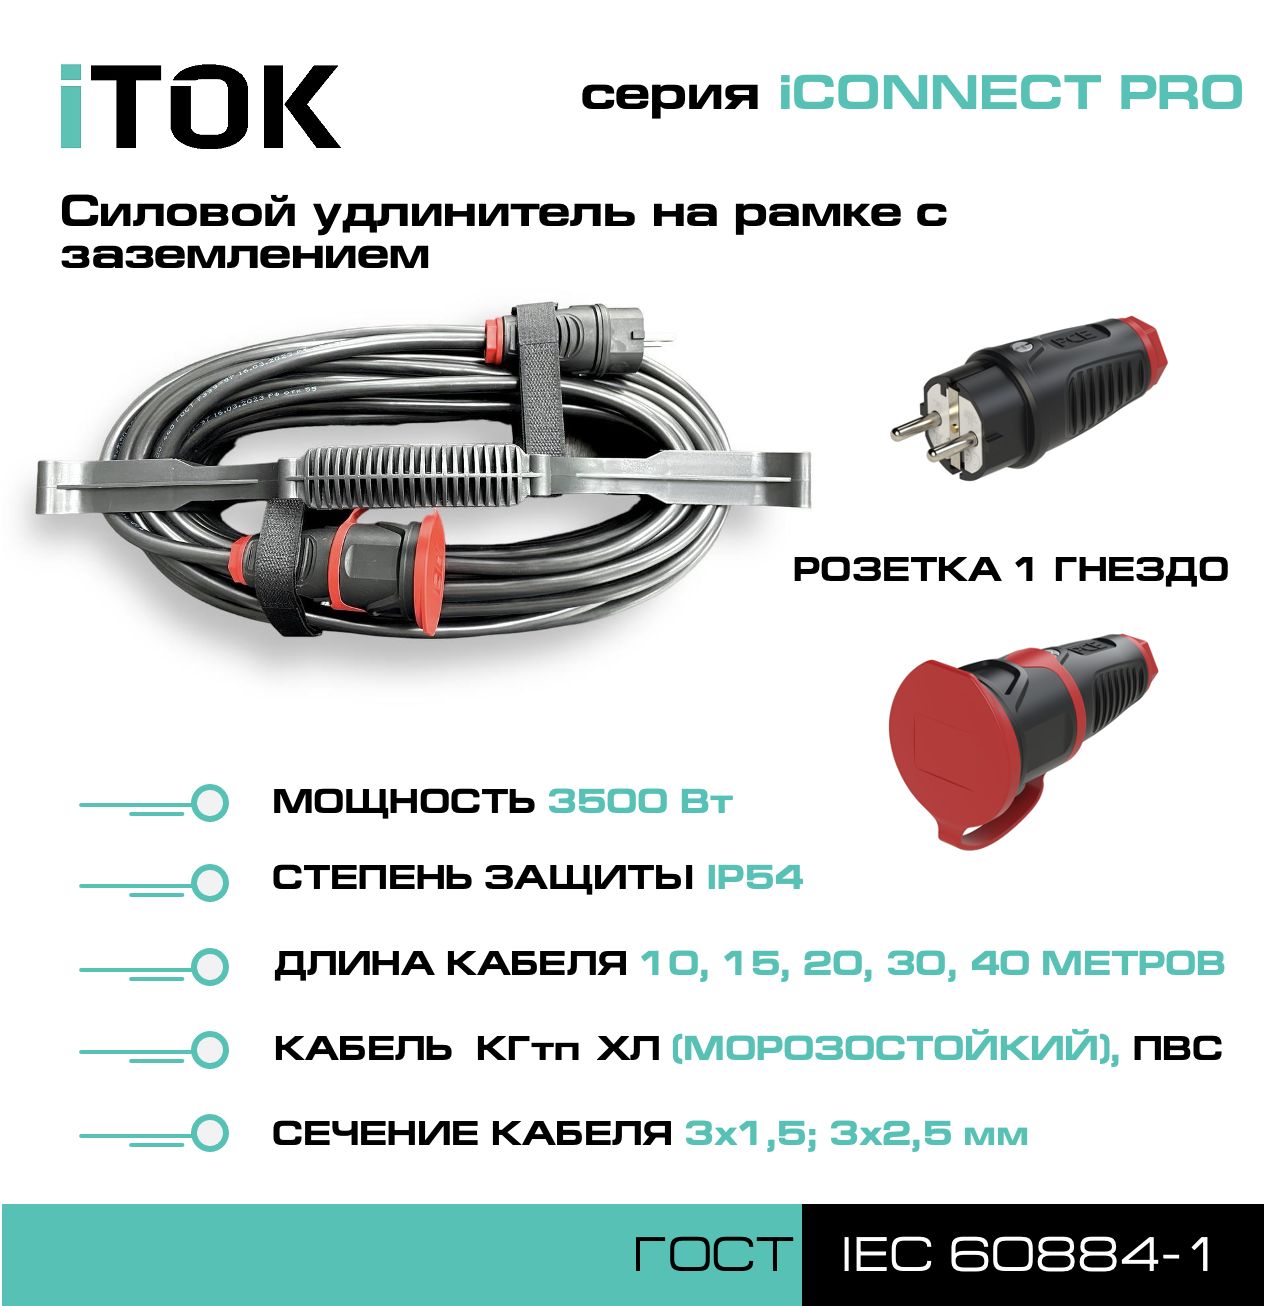 Удлинитель на рамке iTOK iCONNECT PRO с заземлением КГтп-ХЛ 3х2,5 мм 1 гнездо IP54 15 м